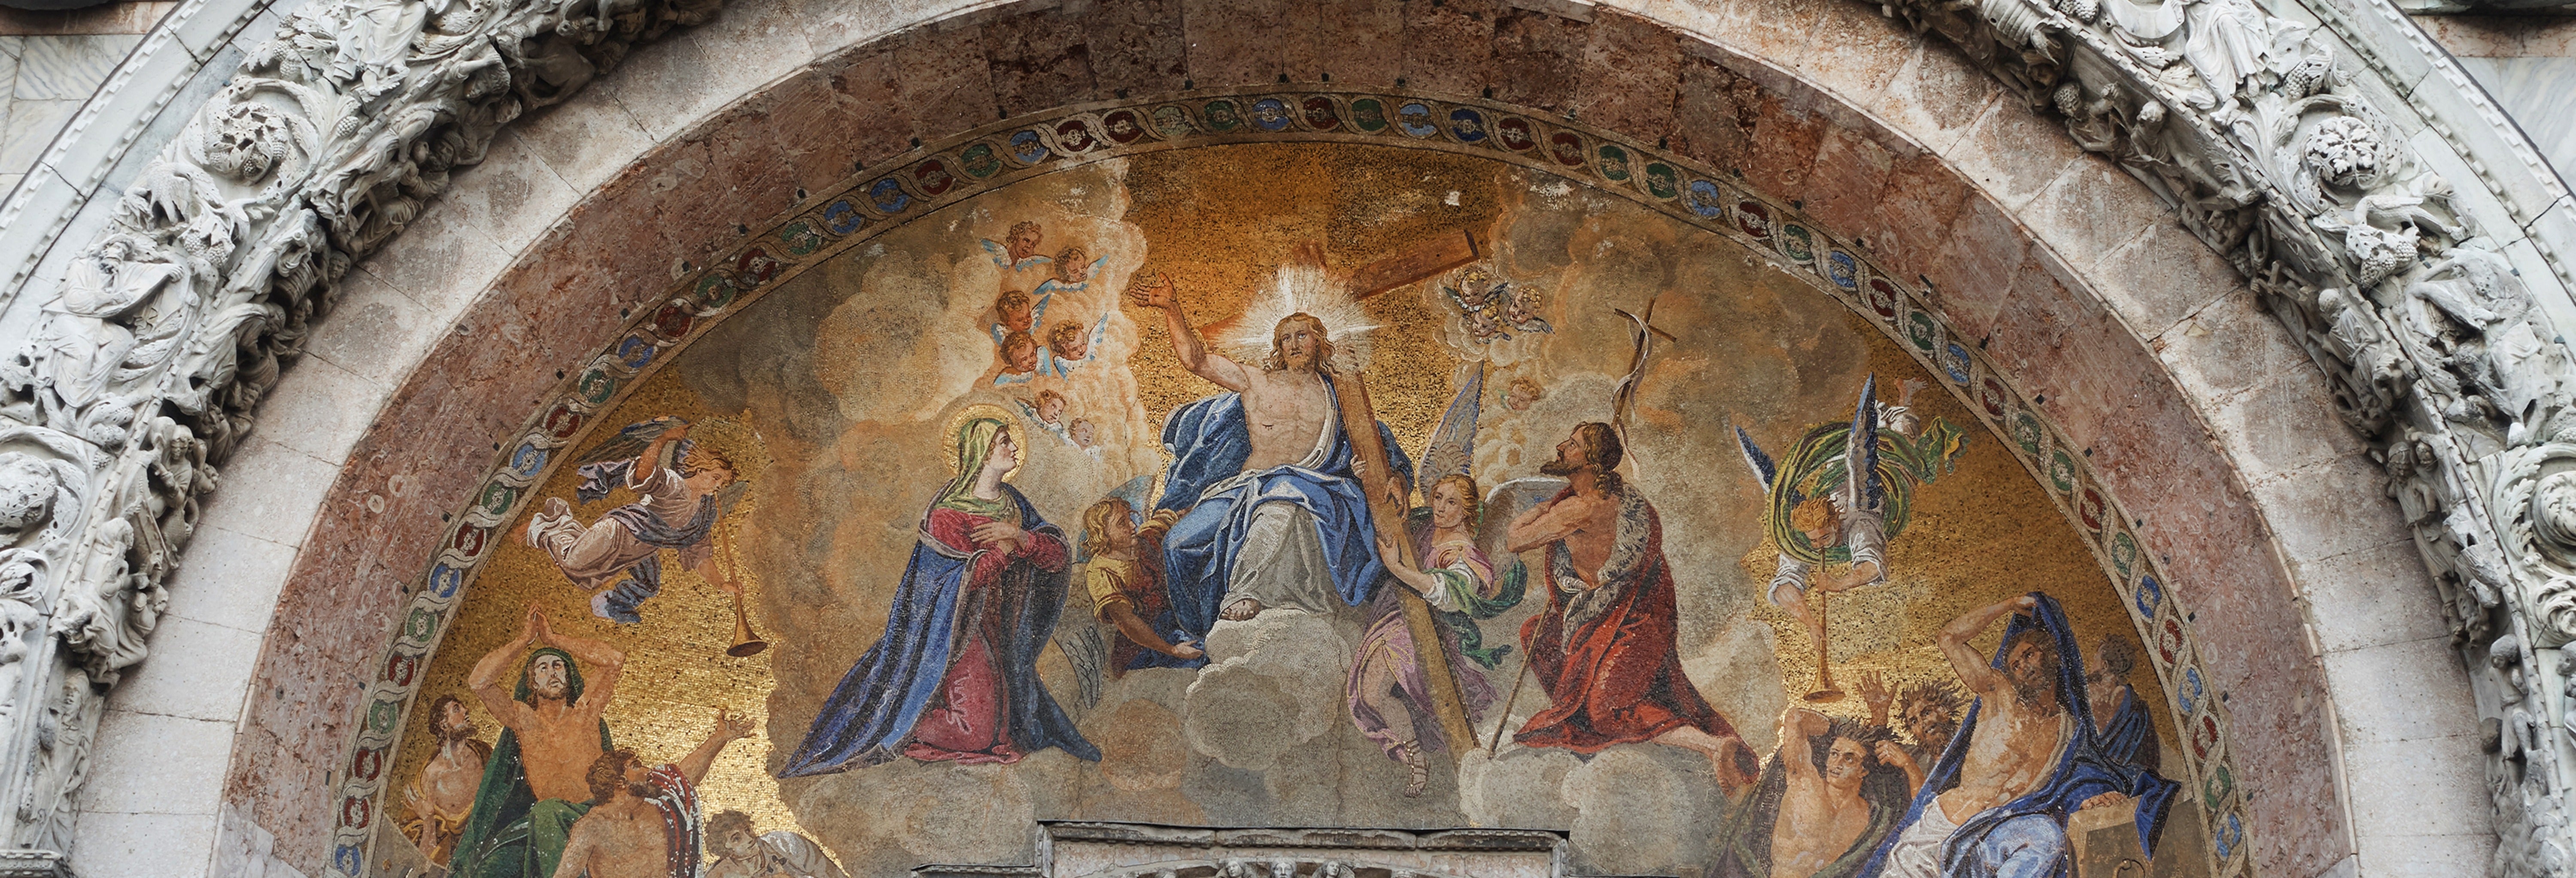 Visita guiada pela Basílica de São Marcos